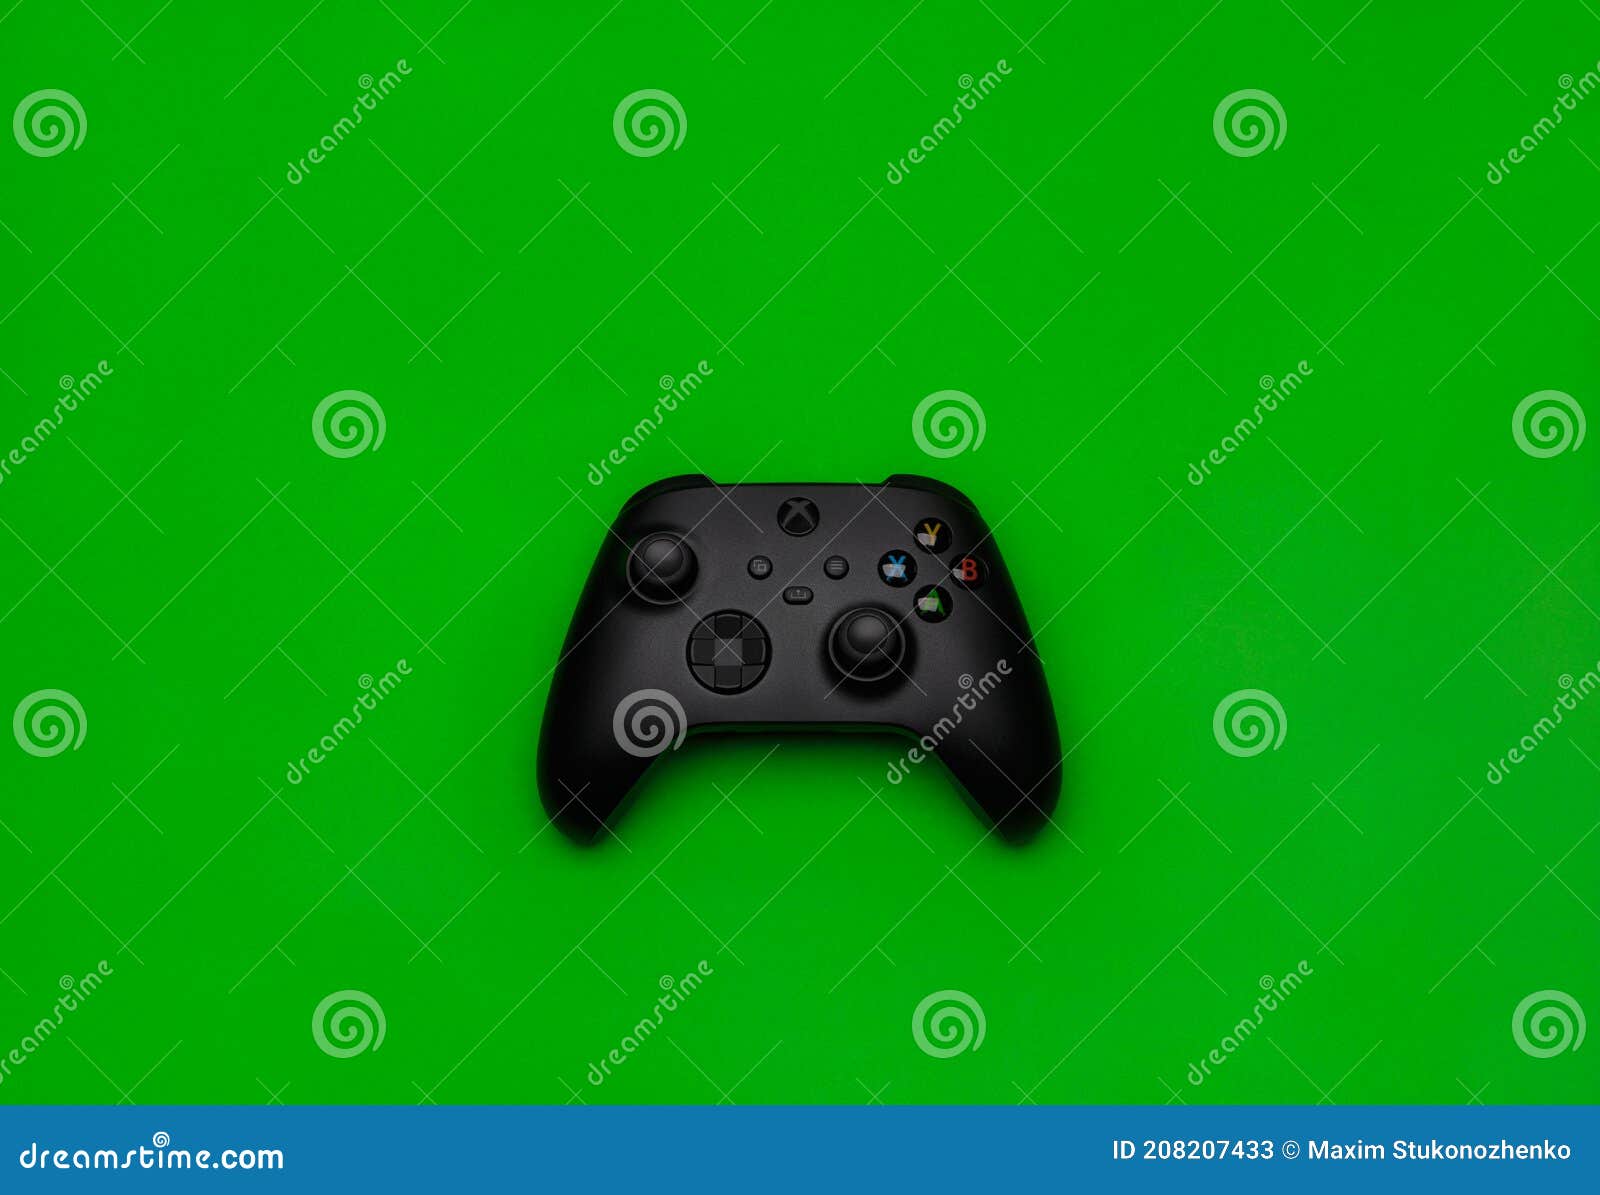 Chụp lại Xbox Wireless đen, hình ảnh đầy bắt mắt và đầy sức hút này sẽ khiến bạn không thể rời mắt. Hãy đặt ngay trên bàn làm việc của bạn để tận hưởng cảm giác chơi game tuyệt vời.